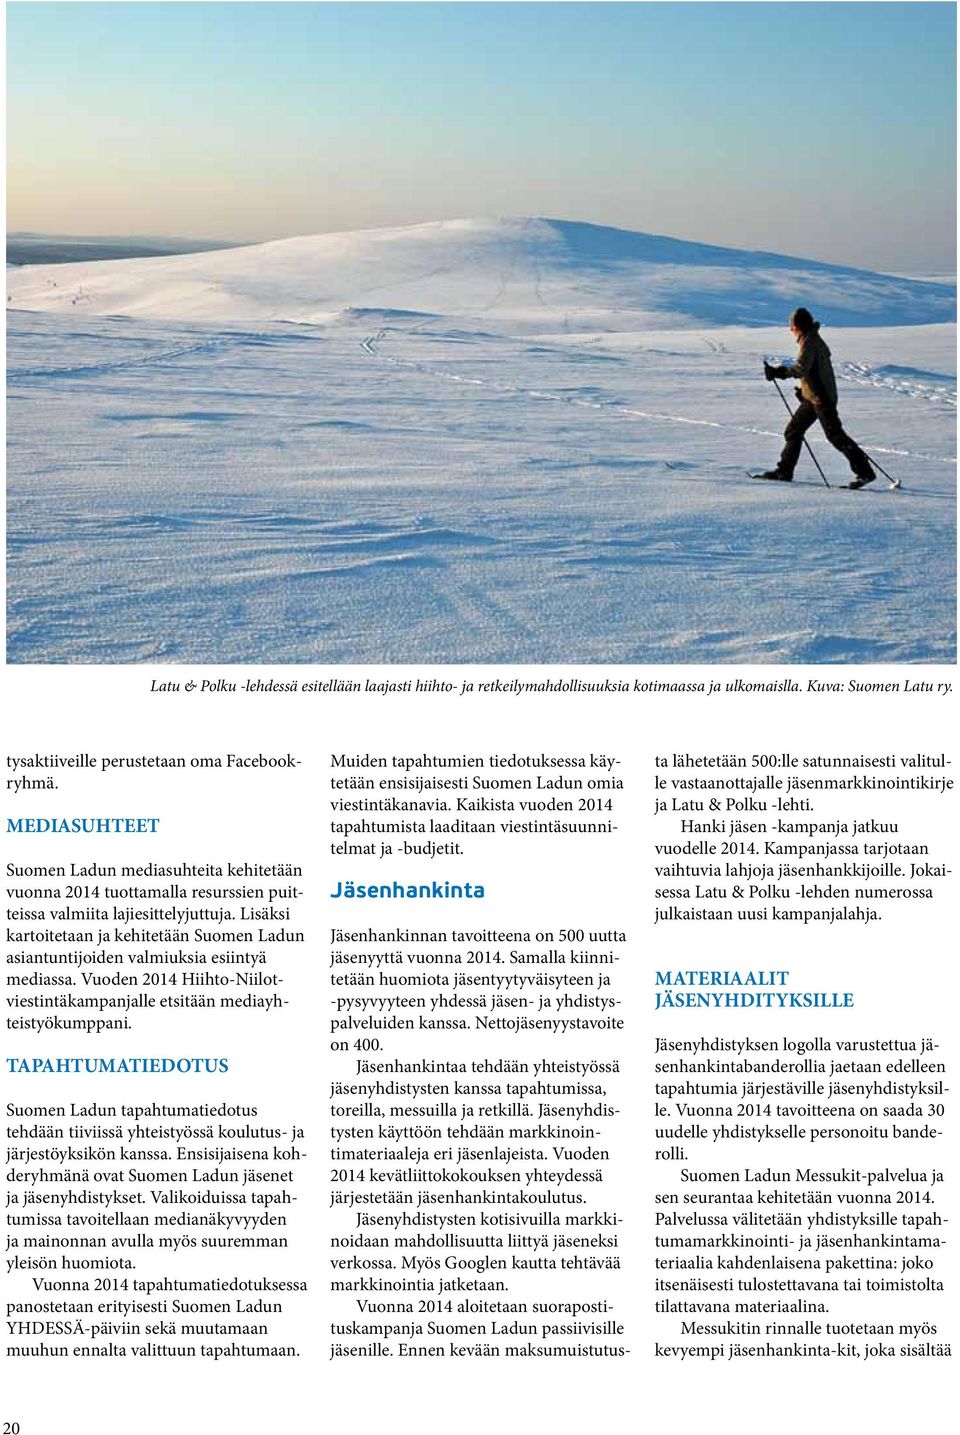 Lisäksi kartoitetaan ja kehitetään Suomen Ladun asiantuntijoiden valmiuksia esiintyä mediassa. Vuoden 2014 Hiihto-Niilotviestintäkampanjalle etsitään mediayhteistyökumppani.